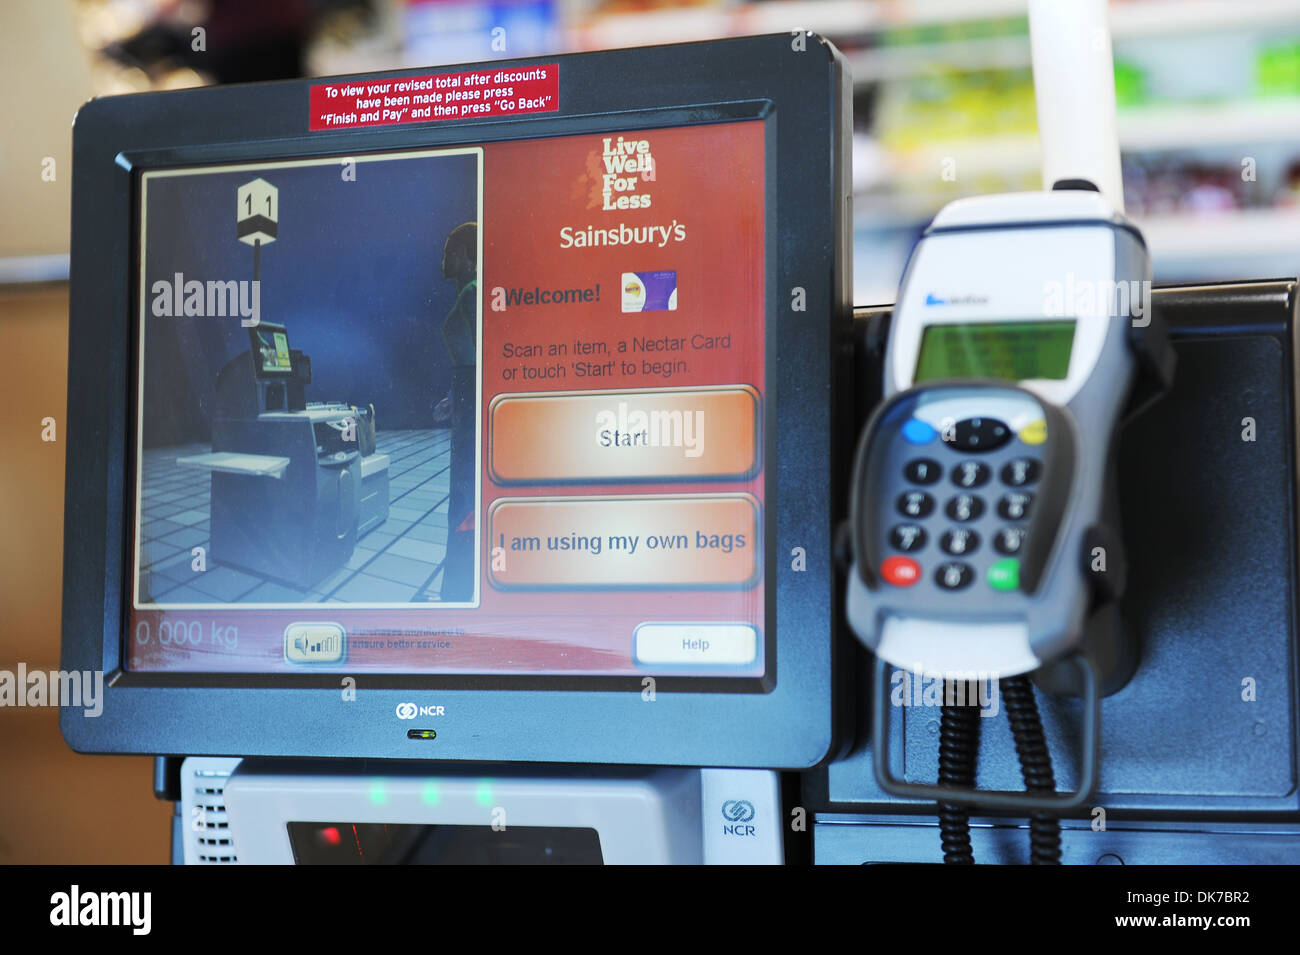 Machine de libre-encaissement, de libre-service commander ou Semi assisté activé Client Terminal (SACAT) machine, Sainsbury's, UK Banque D'Images